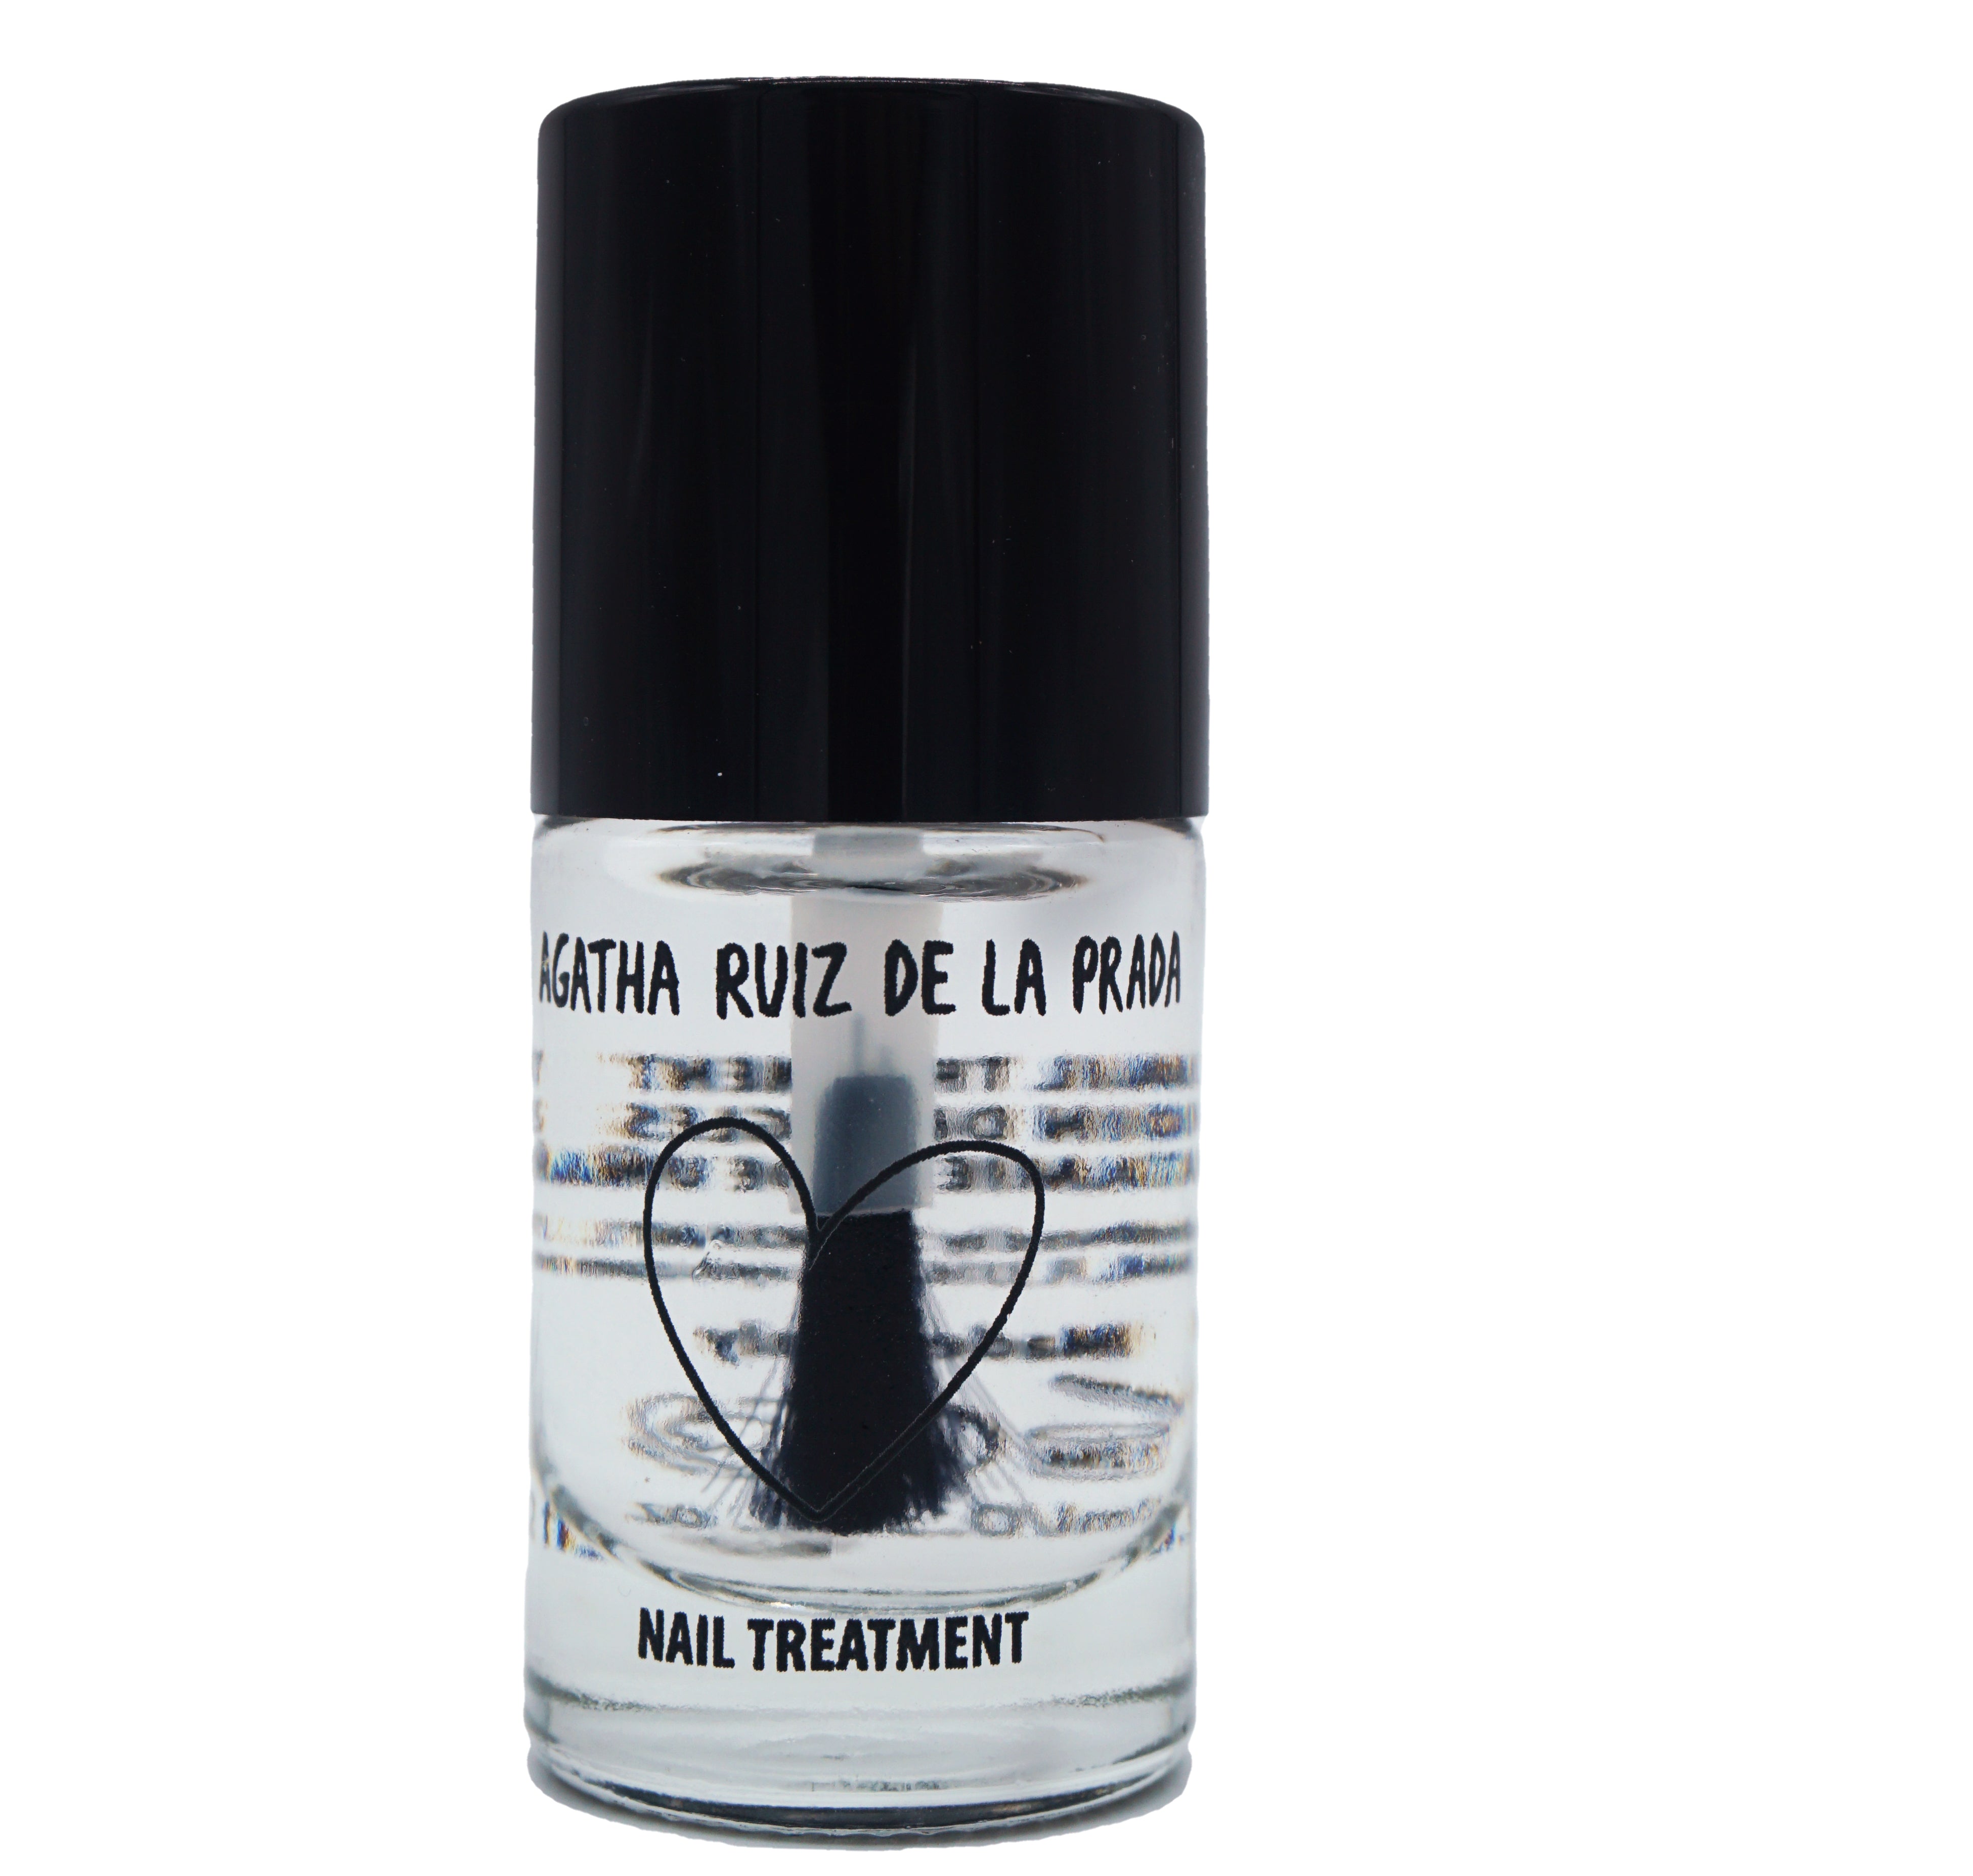 Agatha Ruiz de la Prada Nail Treatment Bottle Top Coat Gel Effect